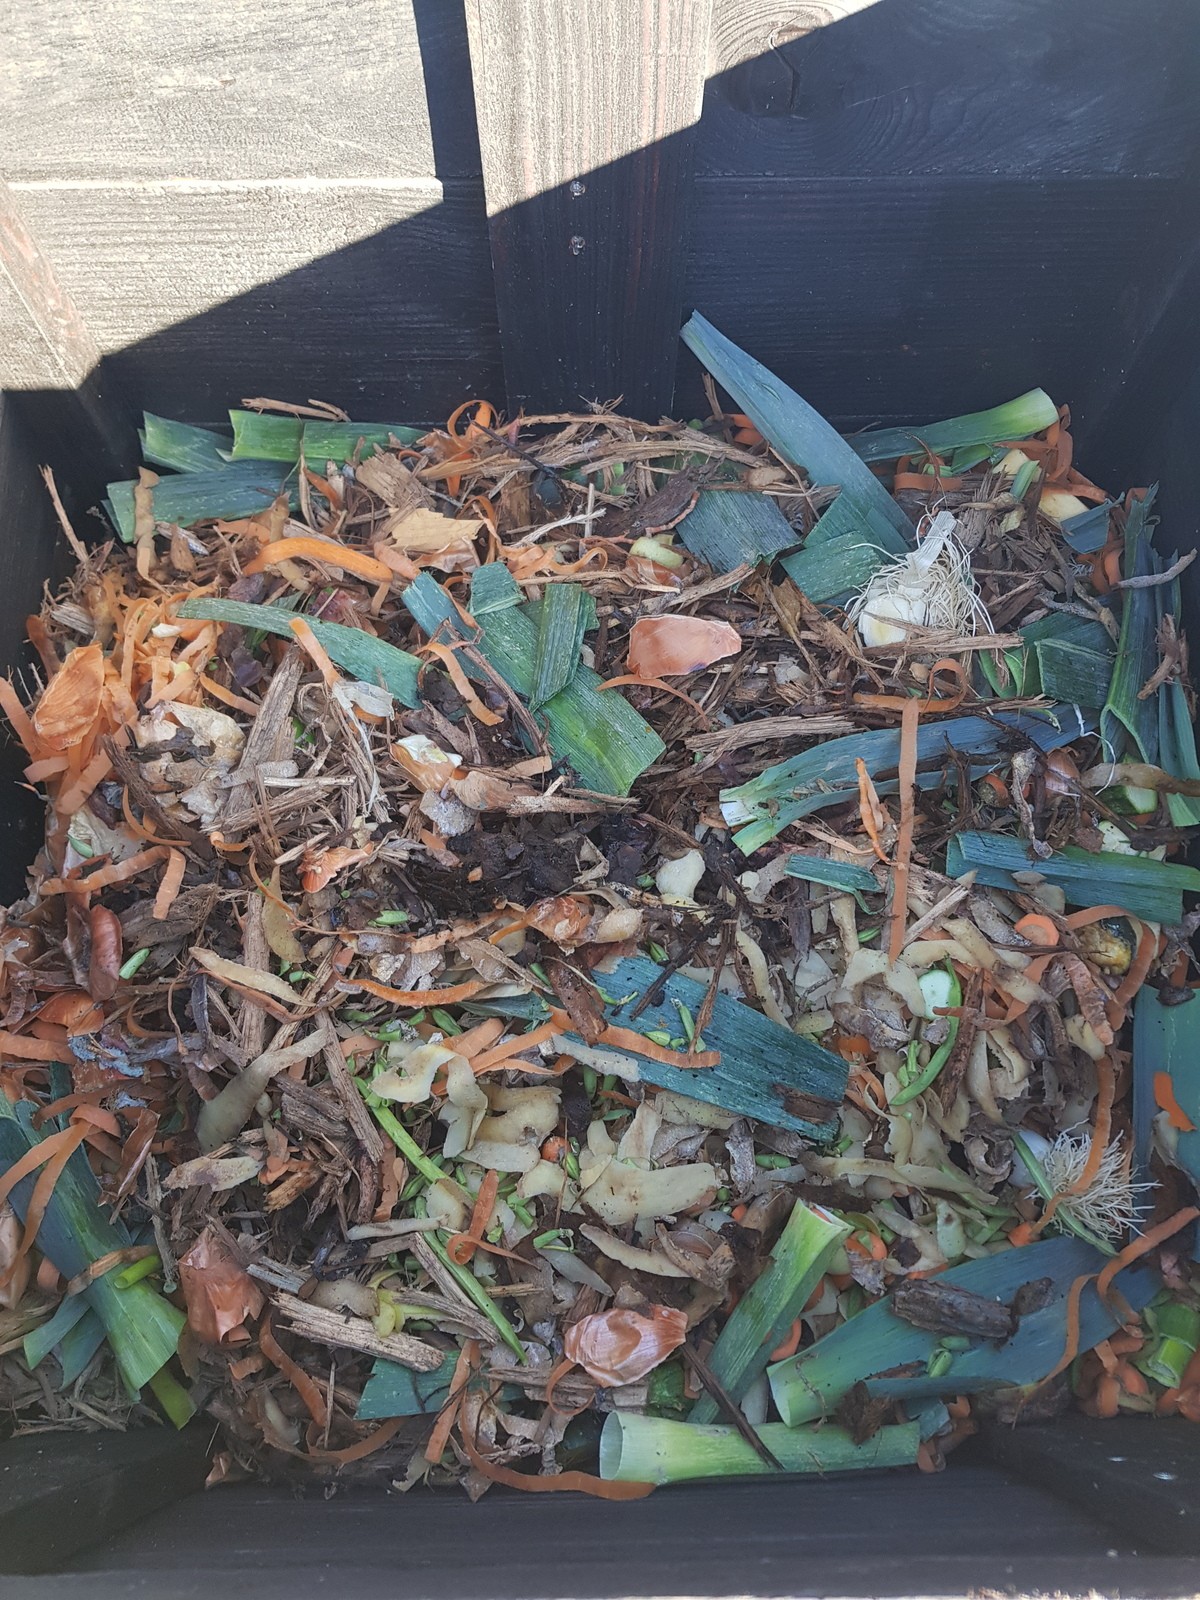 Bilan à deux mois... Que s'est-il passé du côté du site de compostage partagé de l'Adeto ?